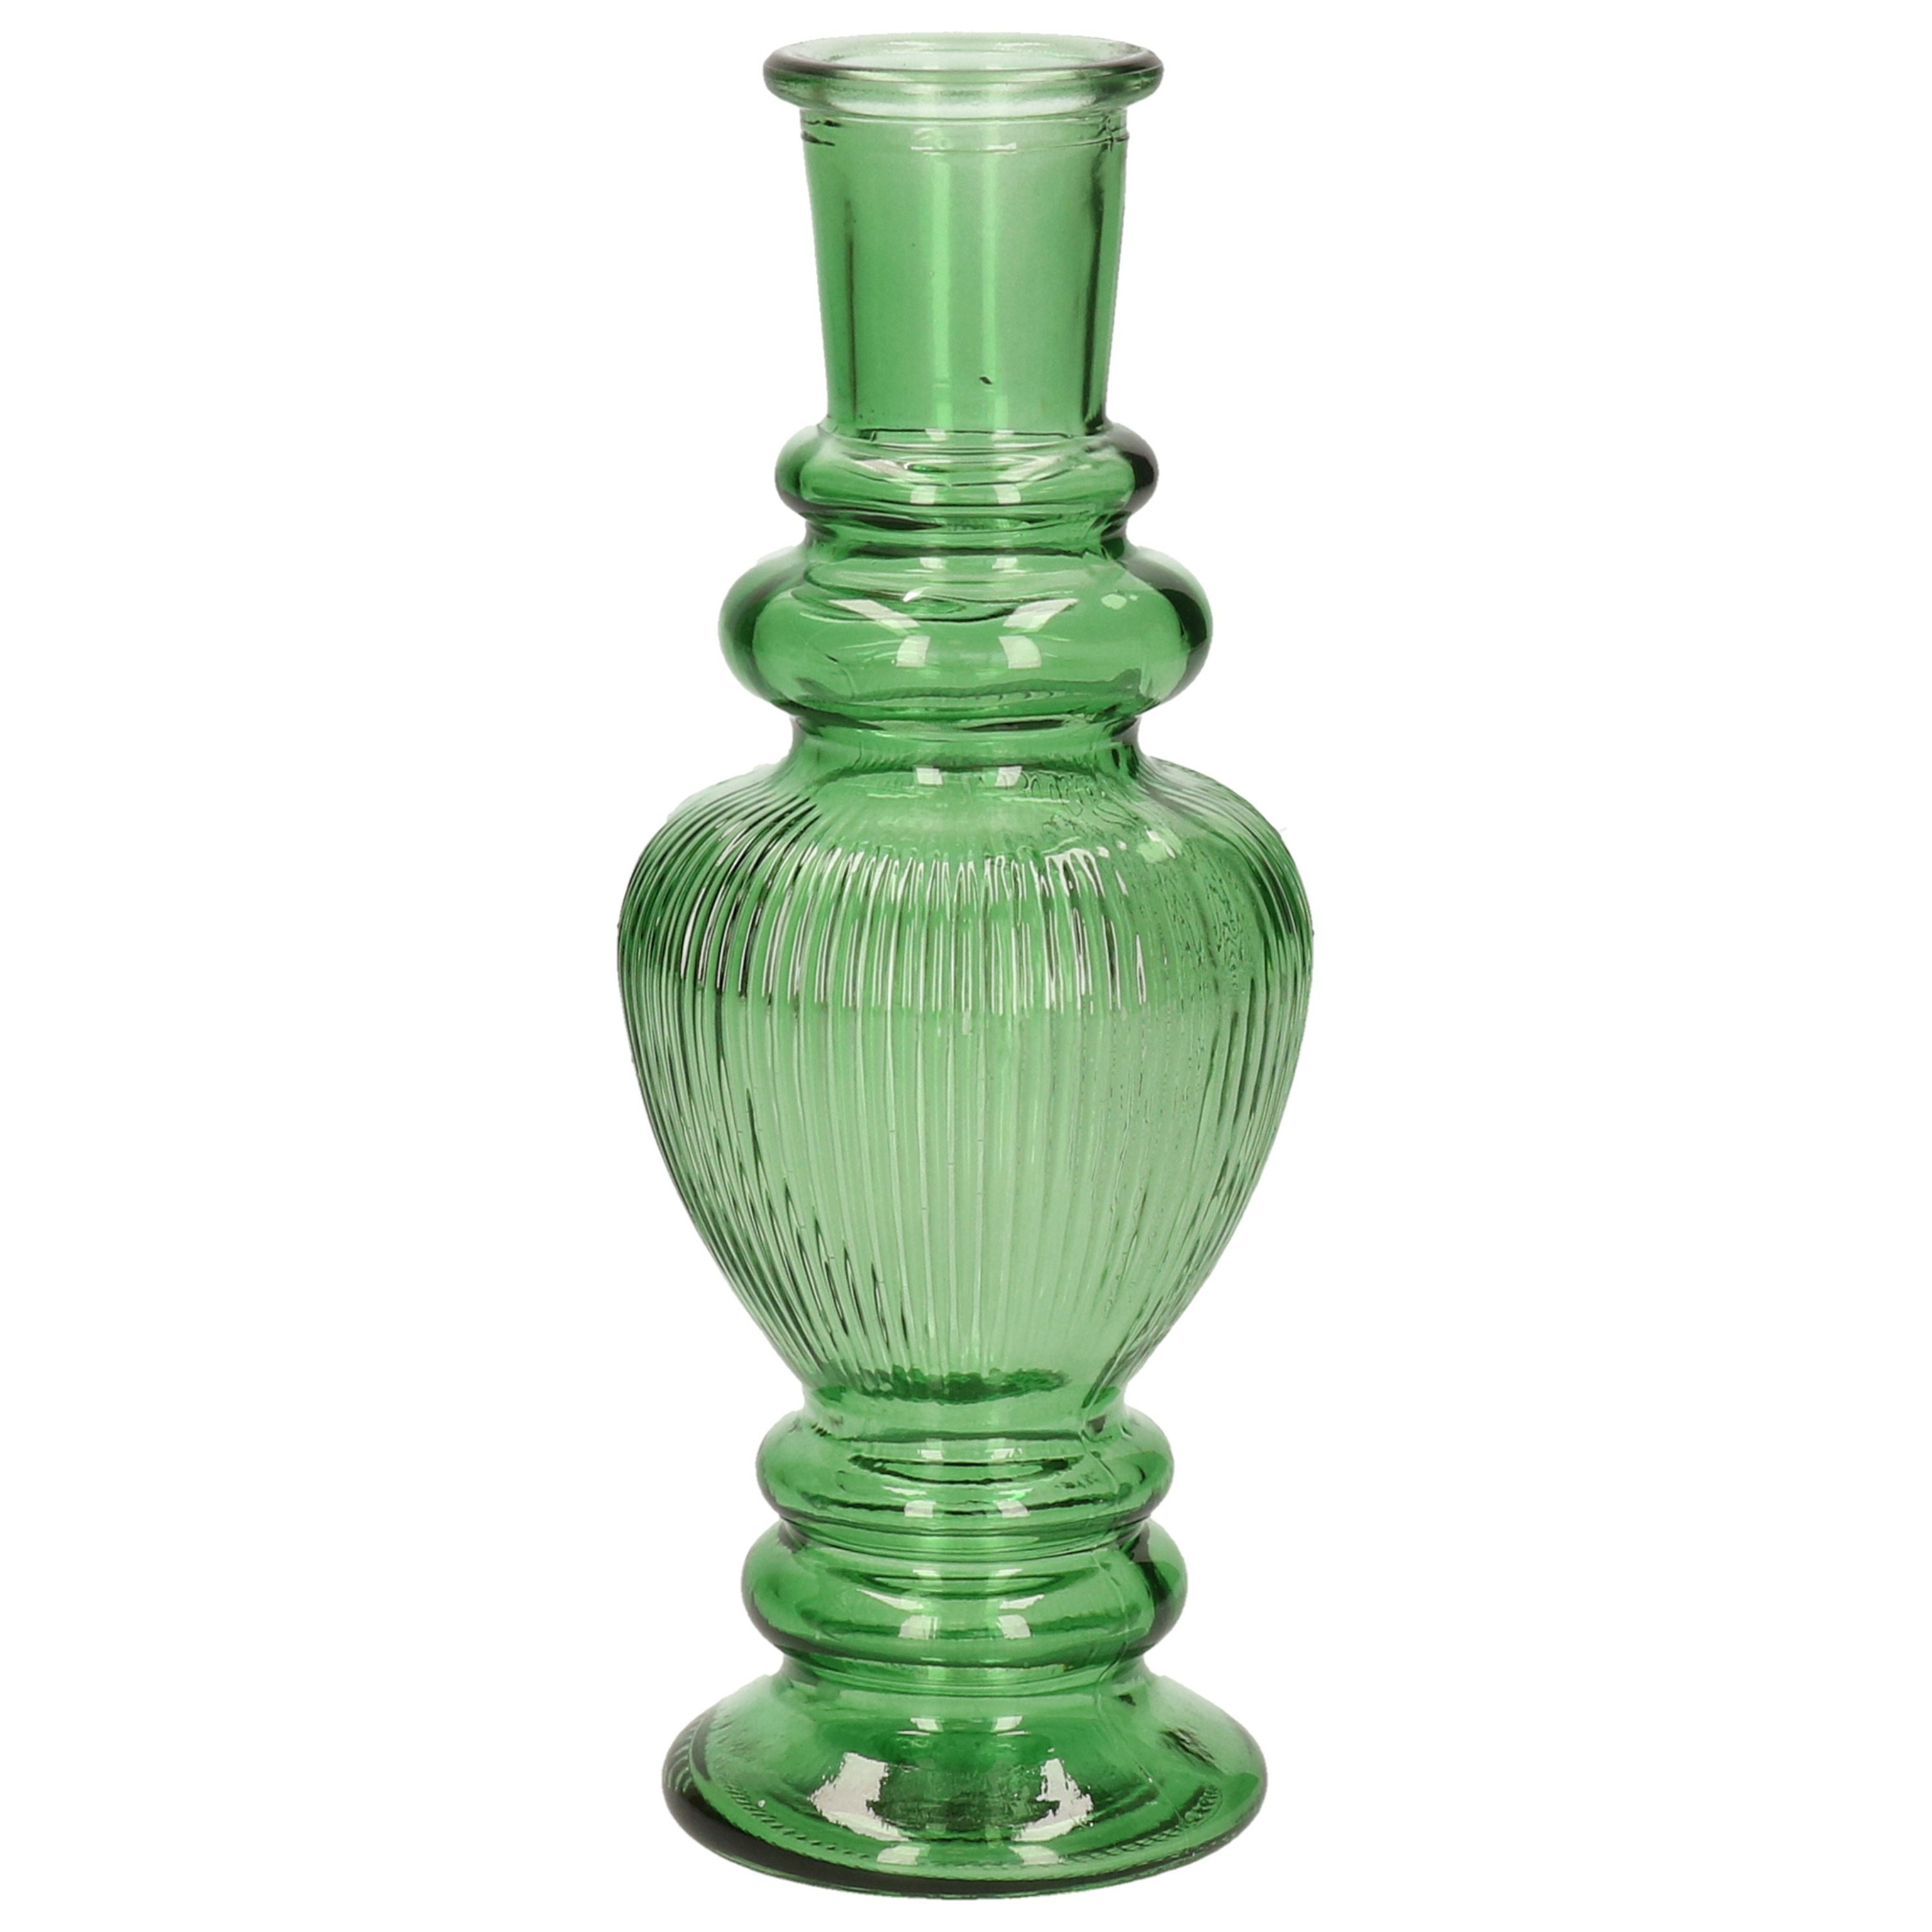 Kaarsen kandelaar Venice gekleurd glas ribbel groen D5,7 x H15 cm